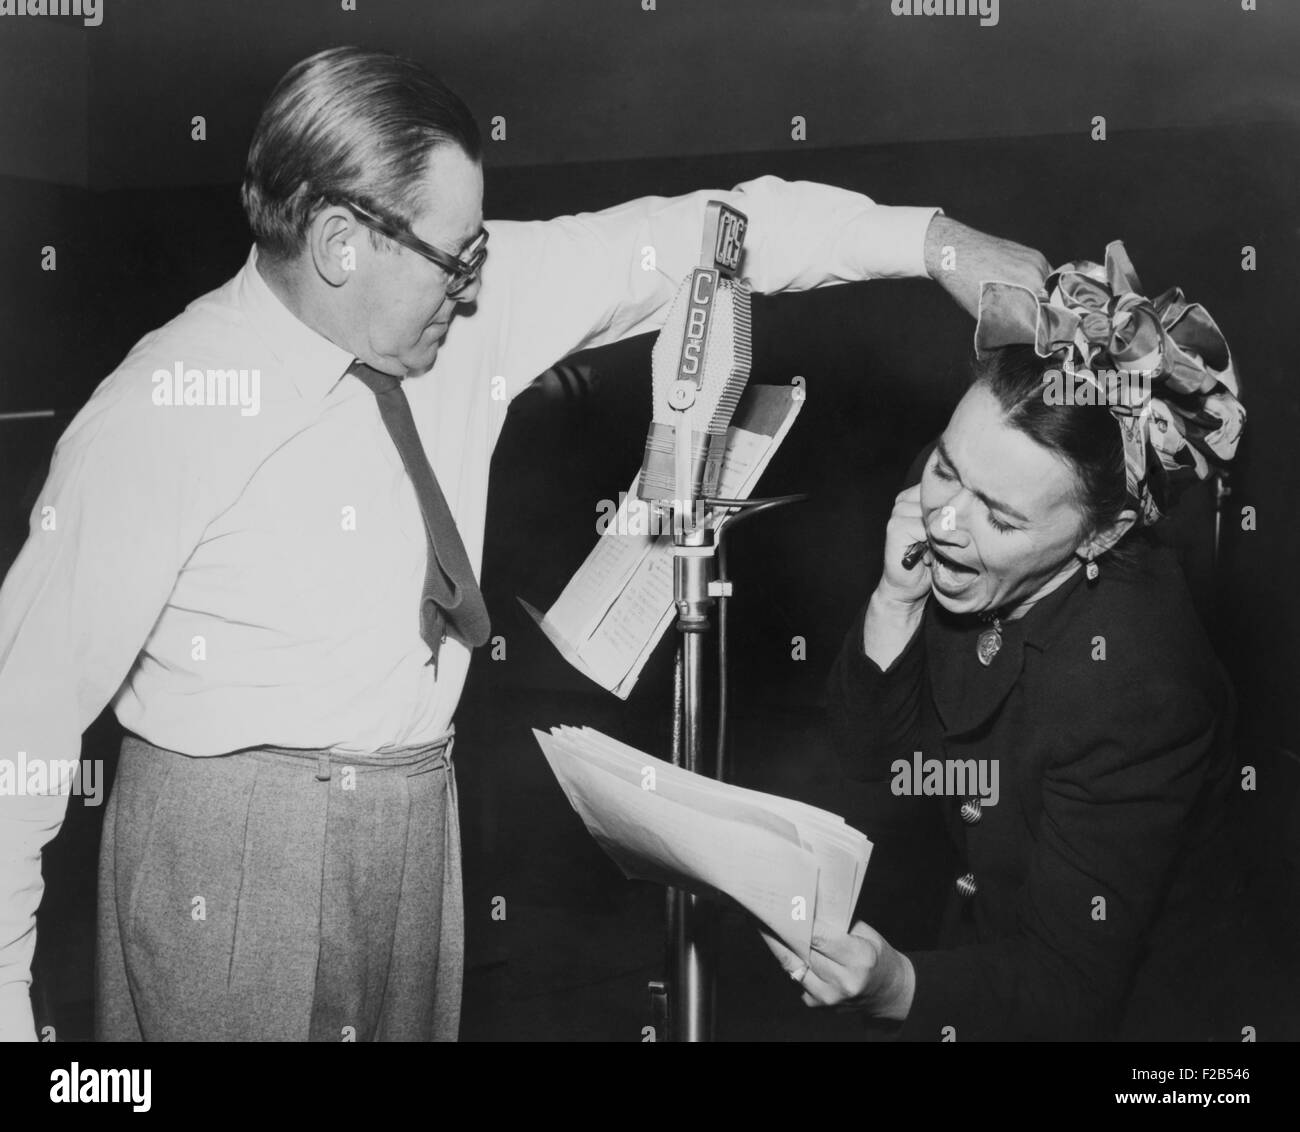 Herbert Marshall frapper un coup, meurtre de sa 'Femme', dans une pièce radiophonique, 'Retour' pour les fêtes. De 1944 à 1952, Marshall a joué dans sa propre série de radio, l'homme appelé 'X'. - BSLOC  2014 (17 87) Banque D'Images